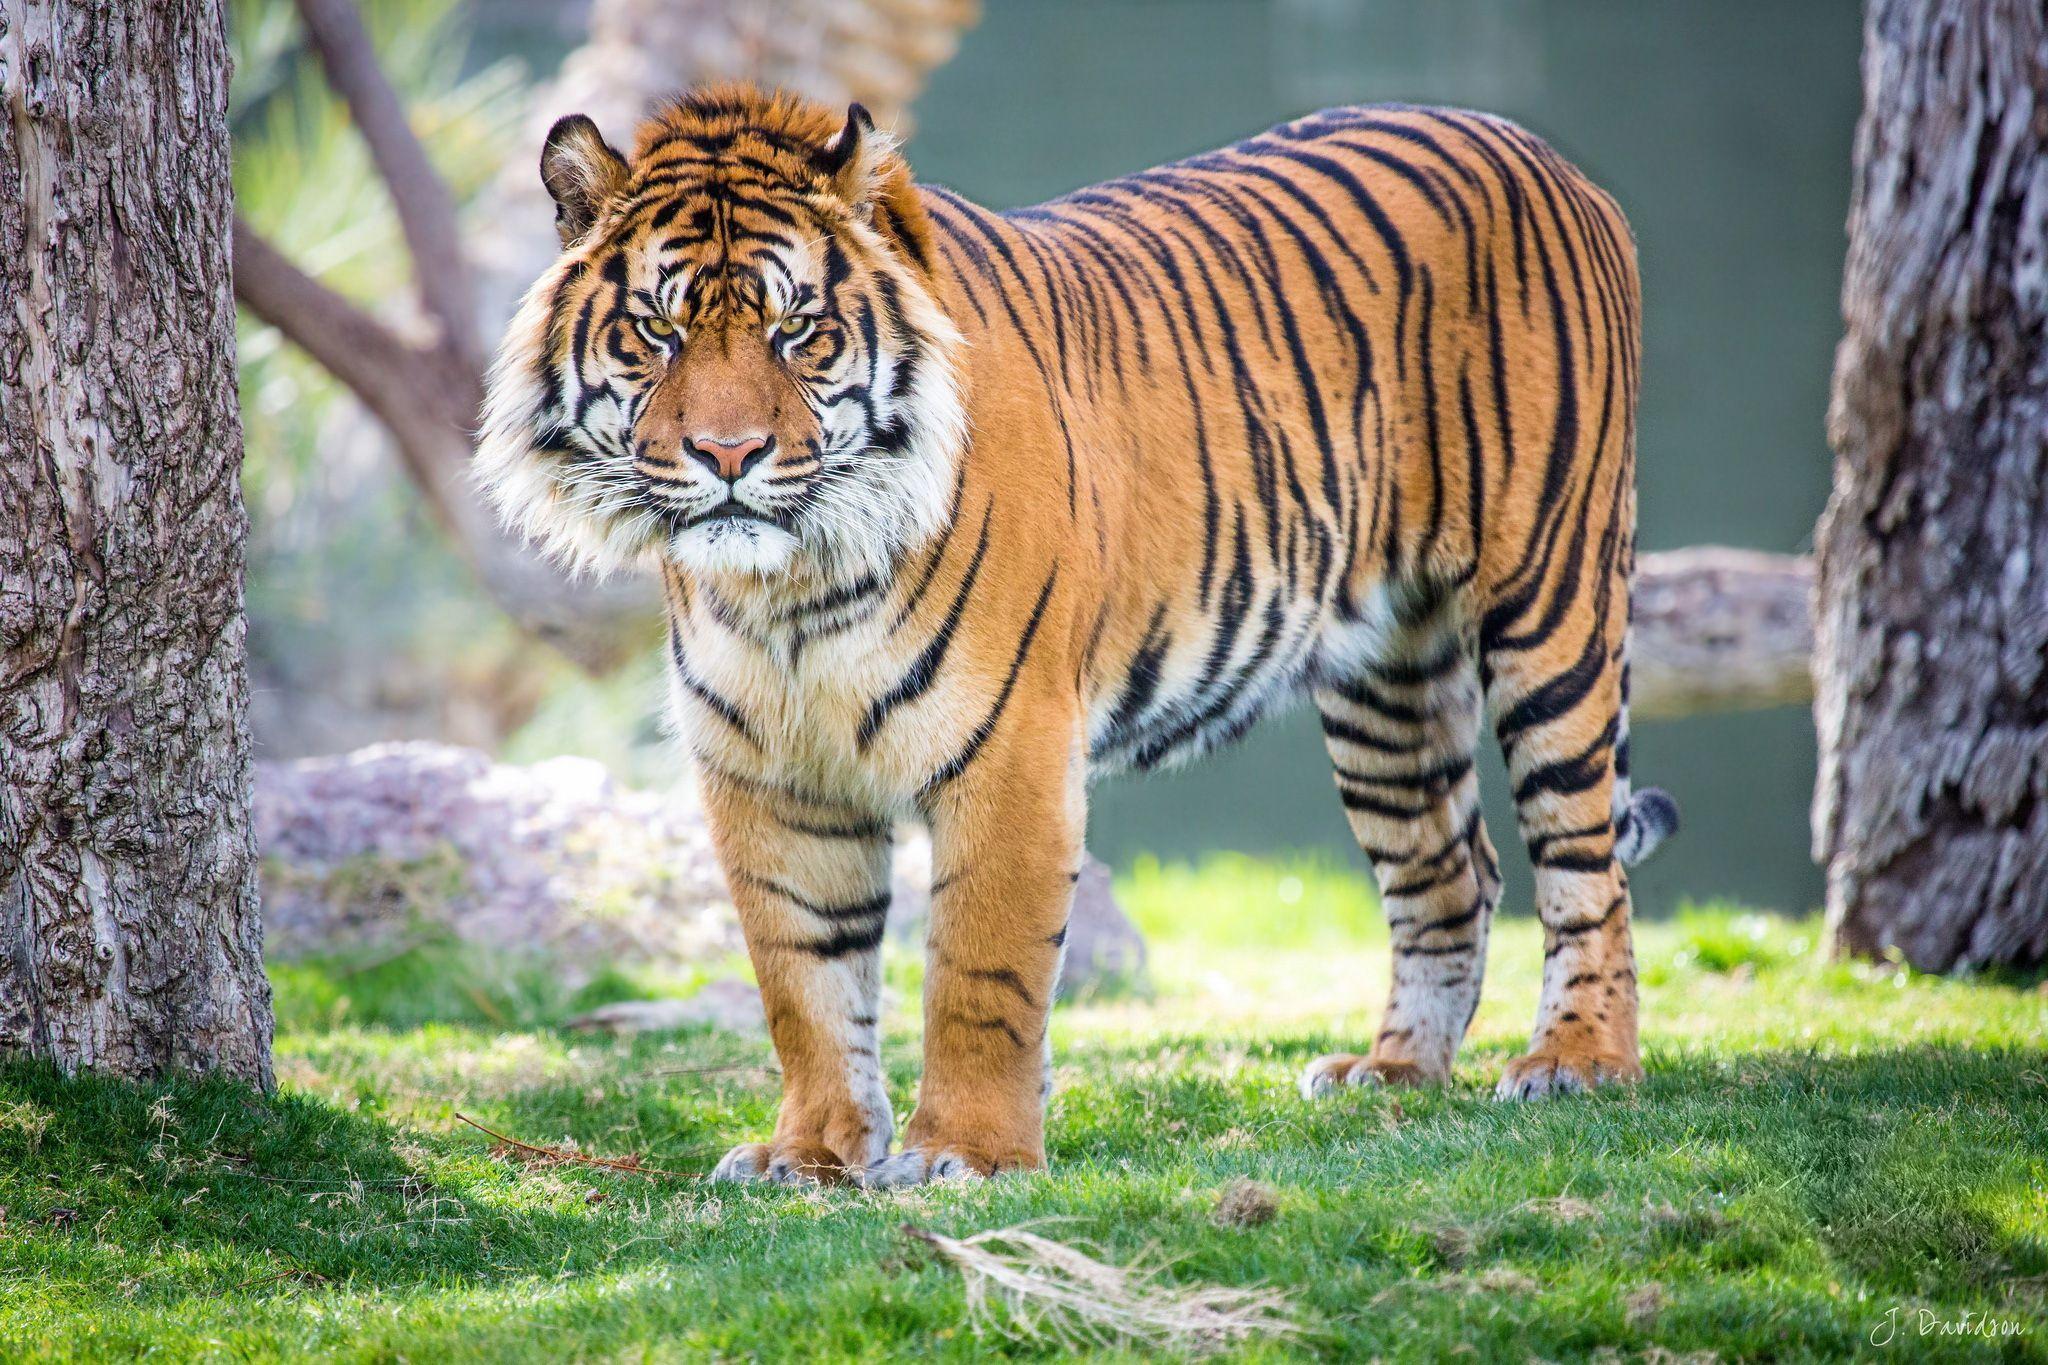 Sumatran Tiger Wallpaper Image Photo Picture Background